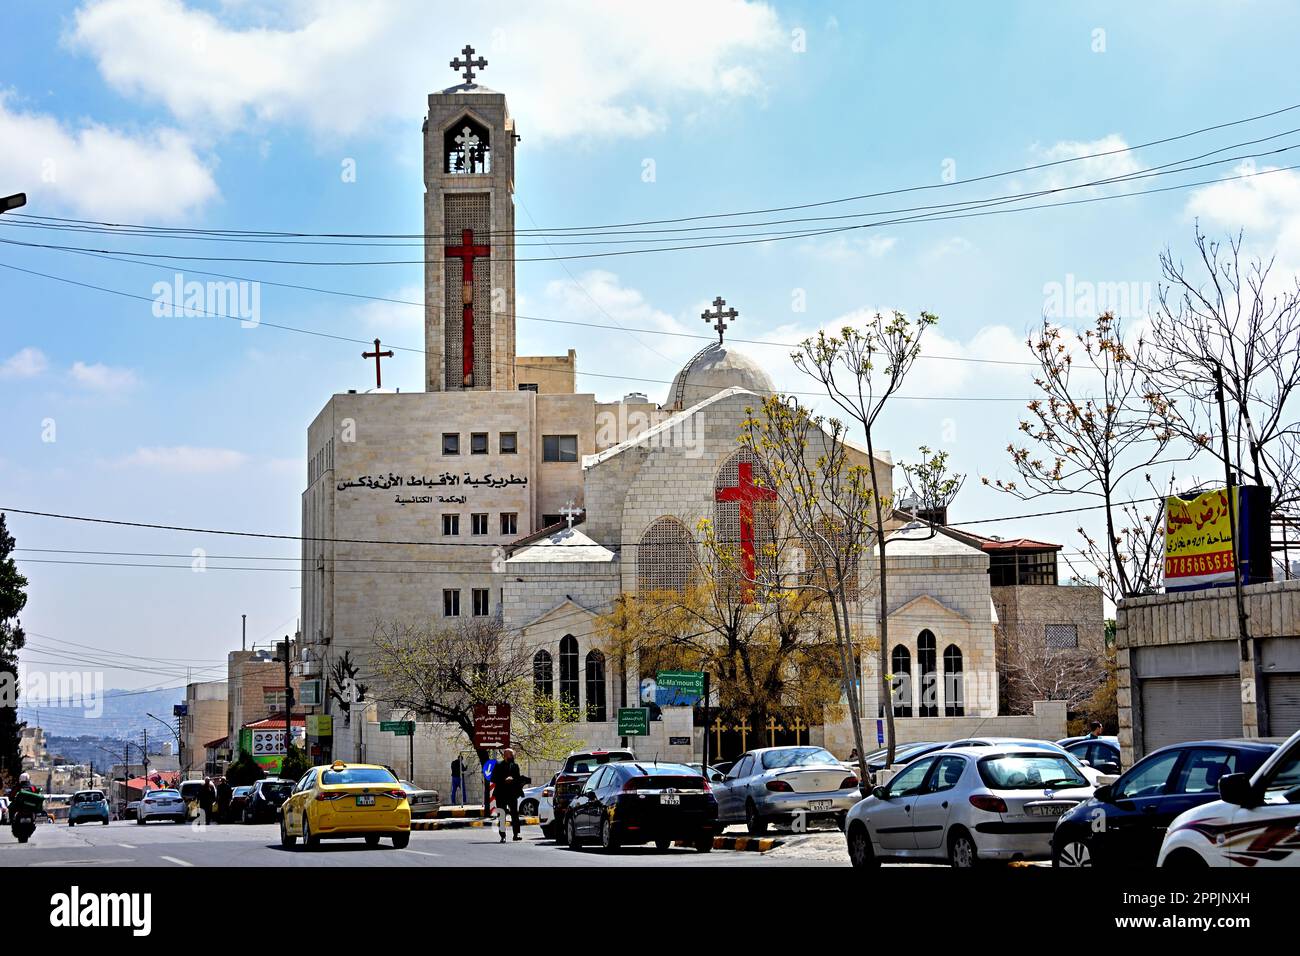 Al Bishara Griechisch-Orthodoxe Kirche, Jabal Al-Weibdeh, Amman, Jordan Amman, Jordanien, الأردن, Haschemitisches Königreich Jordanien, Stockfoto